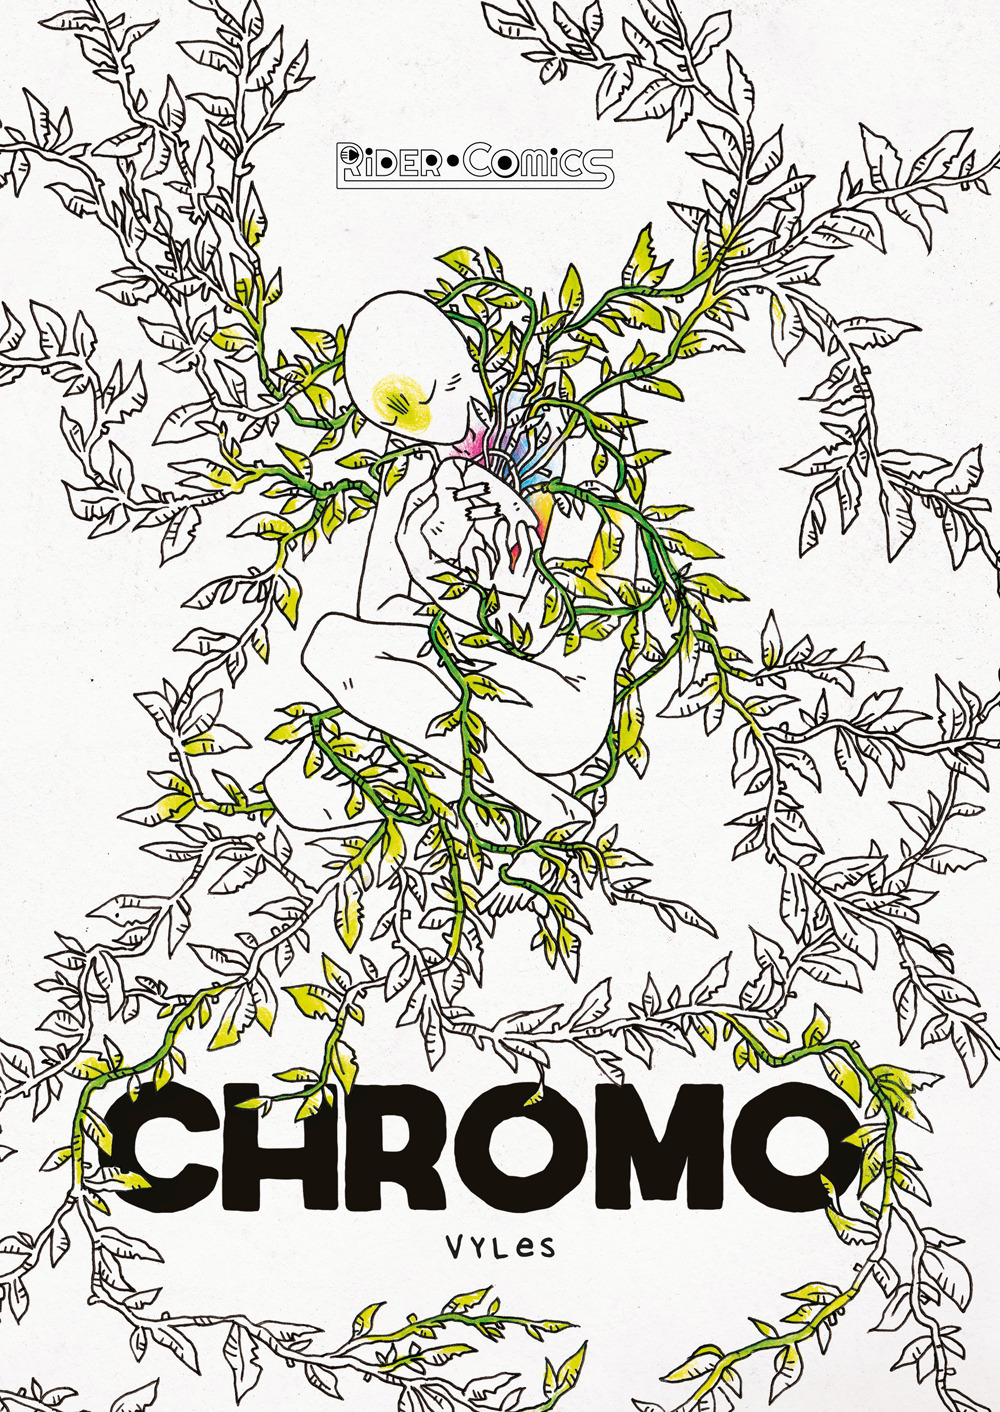 Chromo